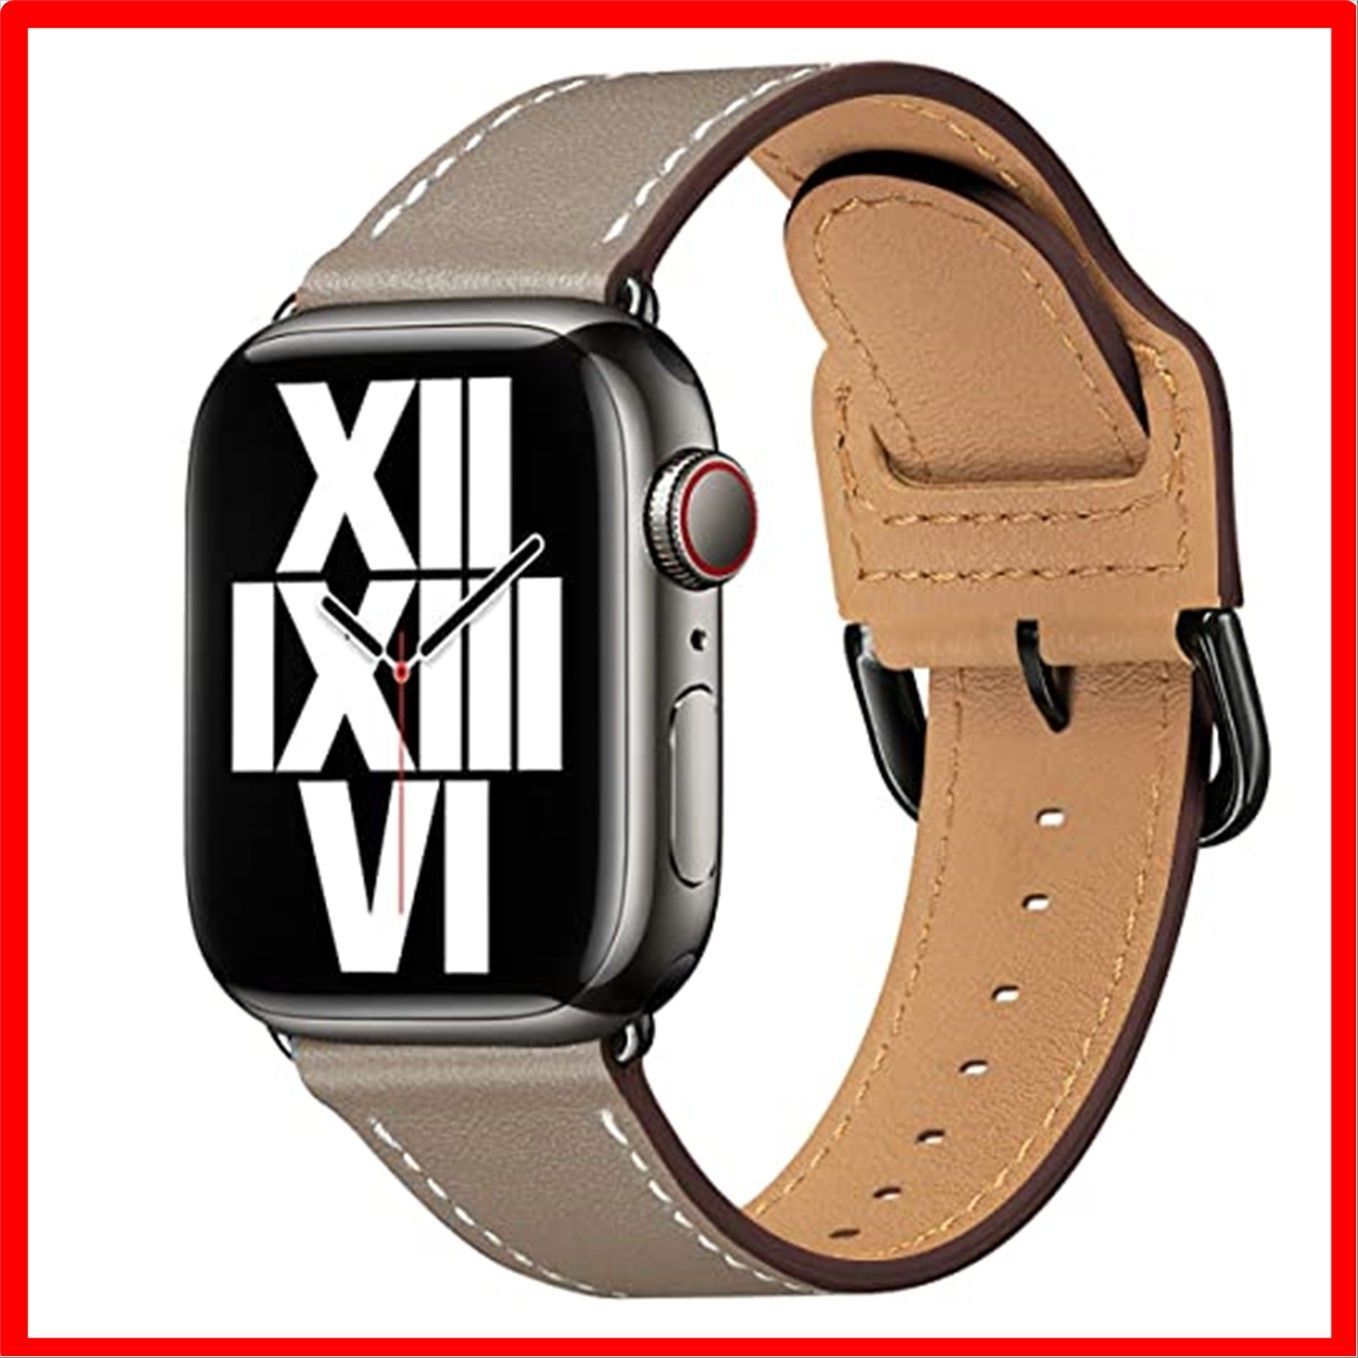 新品送料無料 Apple Watch バンド ベルト ブラック 38 40mm